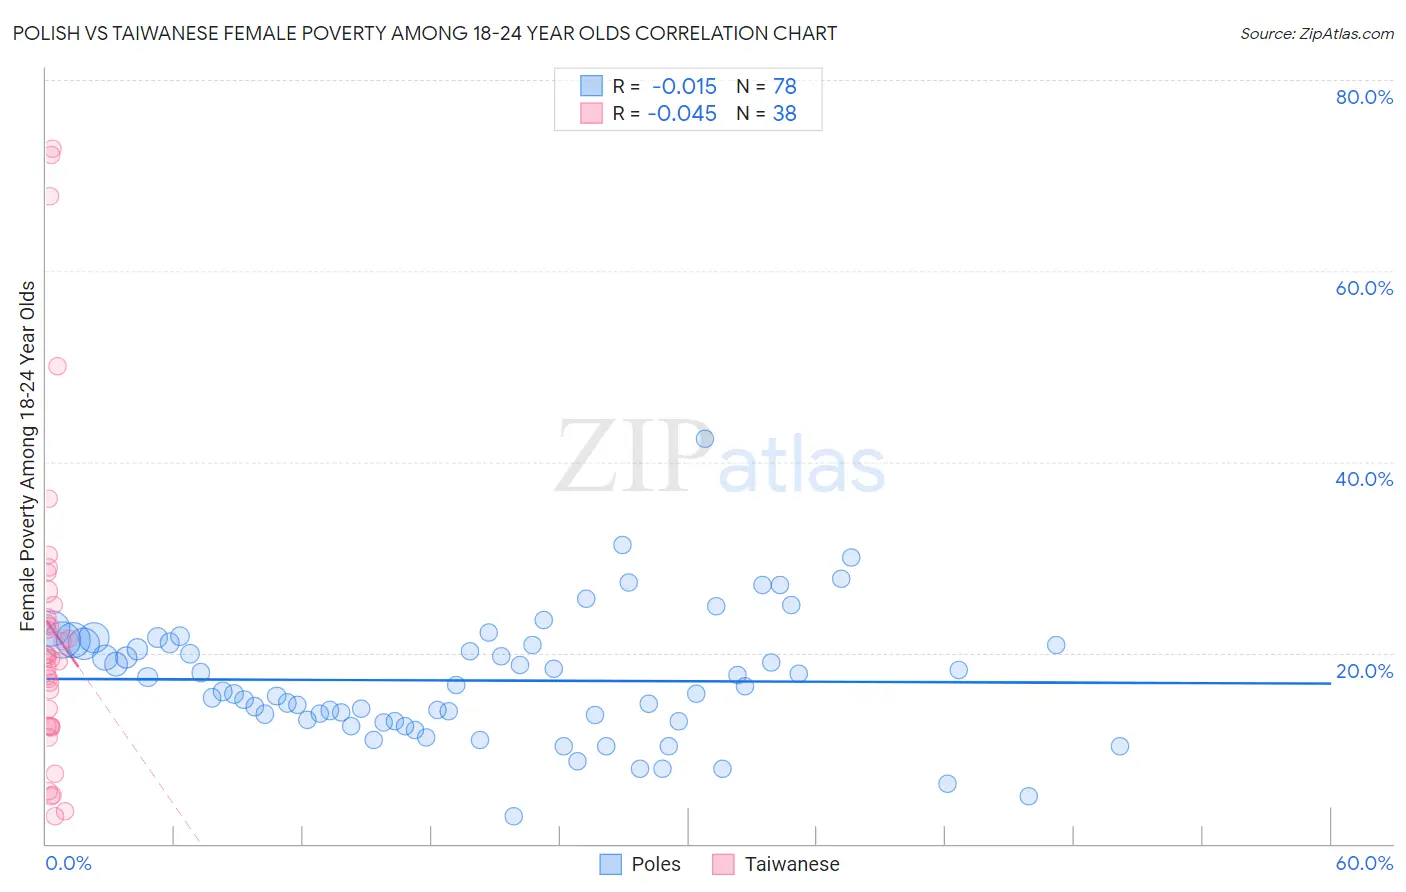 Polish vs Taiwanese Female Poverty Among 18-24 Year Olds